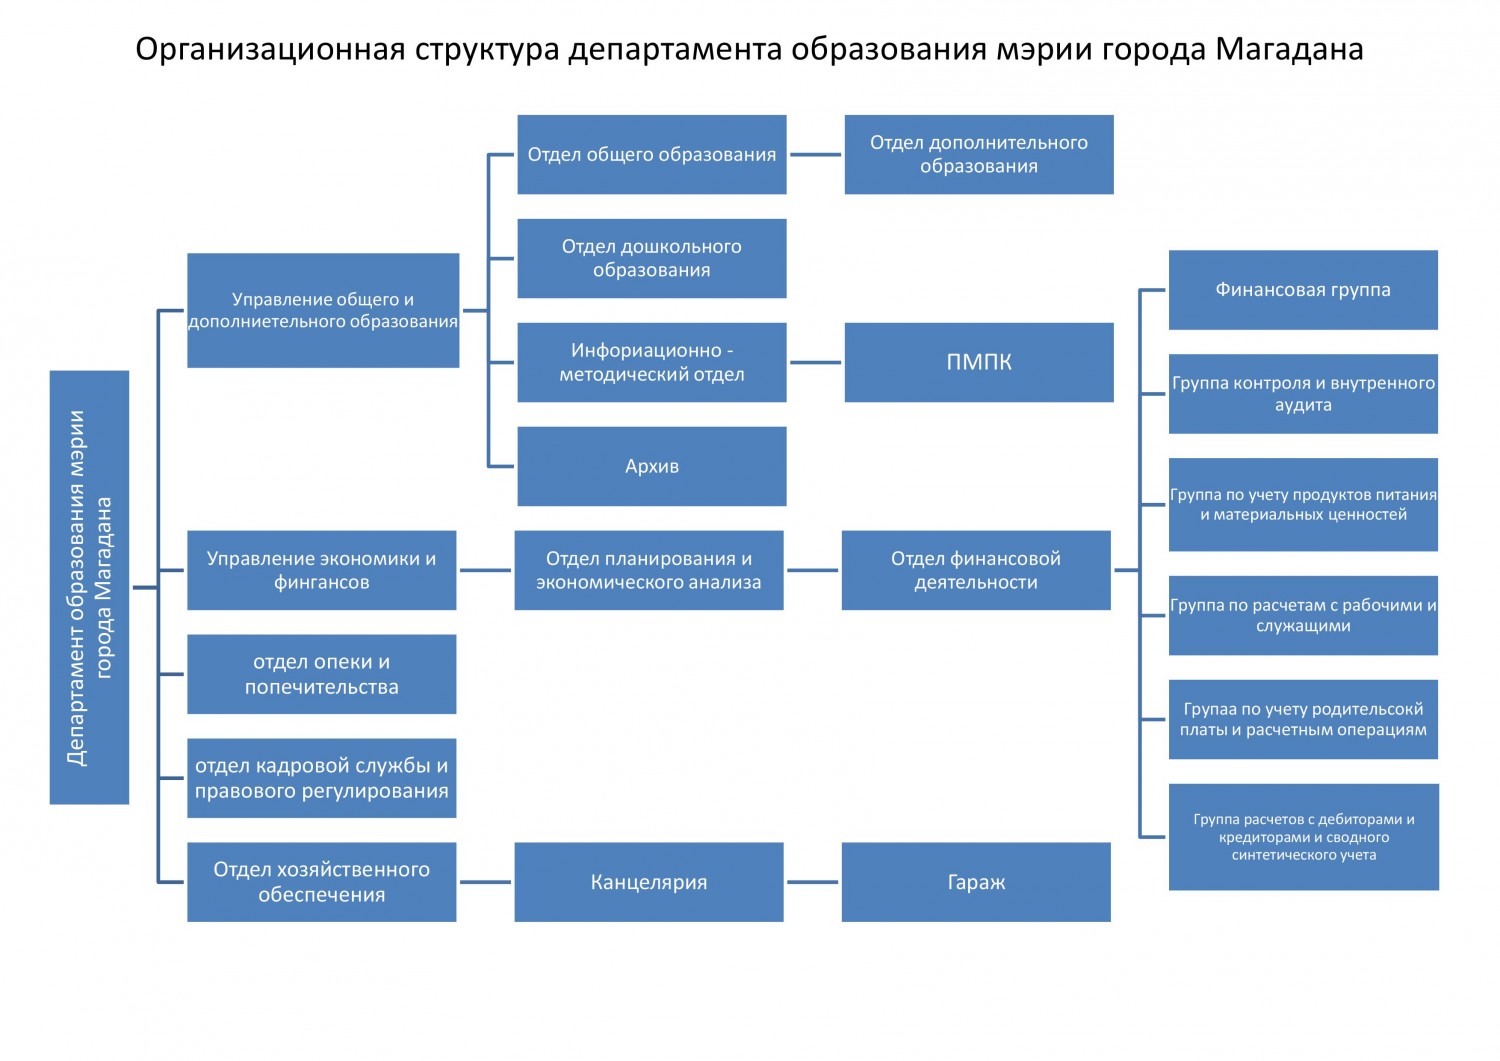 Семейное образование департамент образования. Структура департамента образования Москвы. Структура мэрии города Магадана.